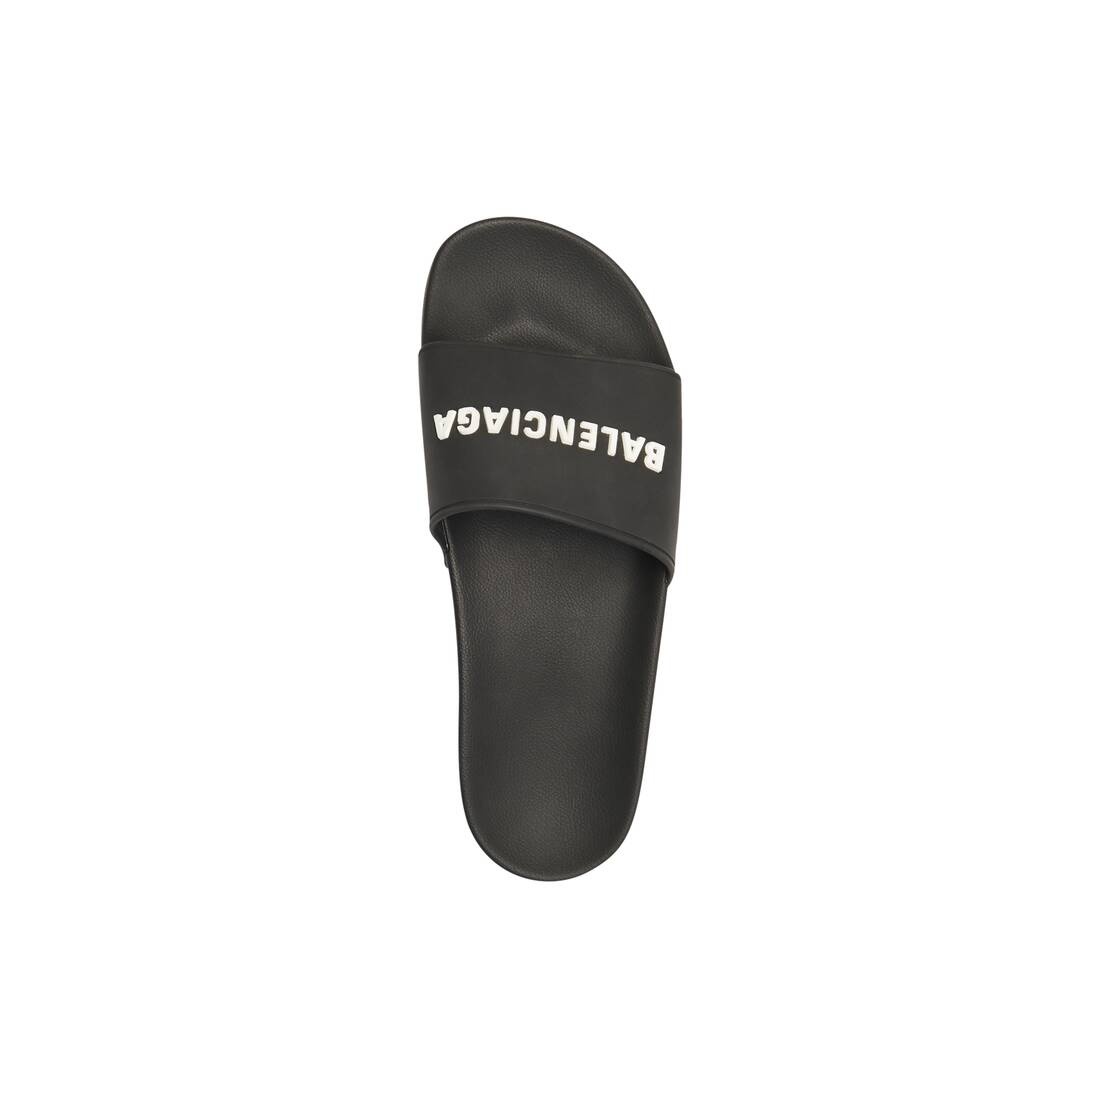 Men's Pool Slide Sandal in Black/white - 4